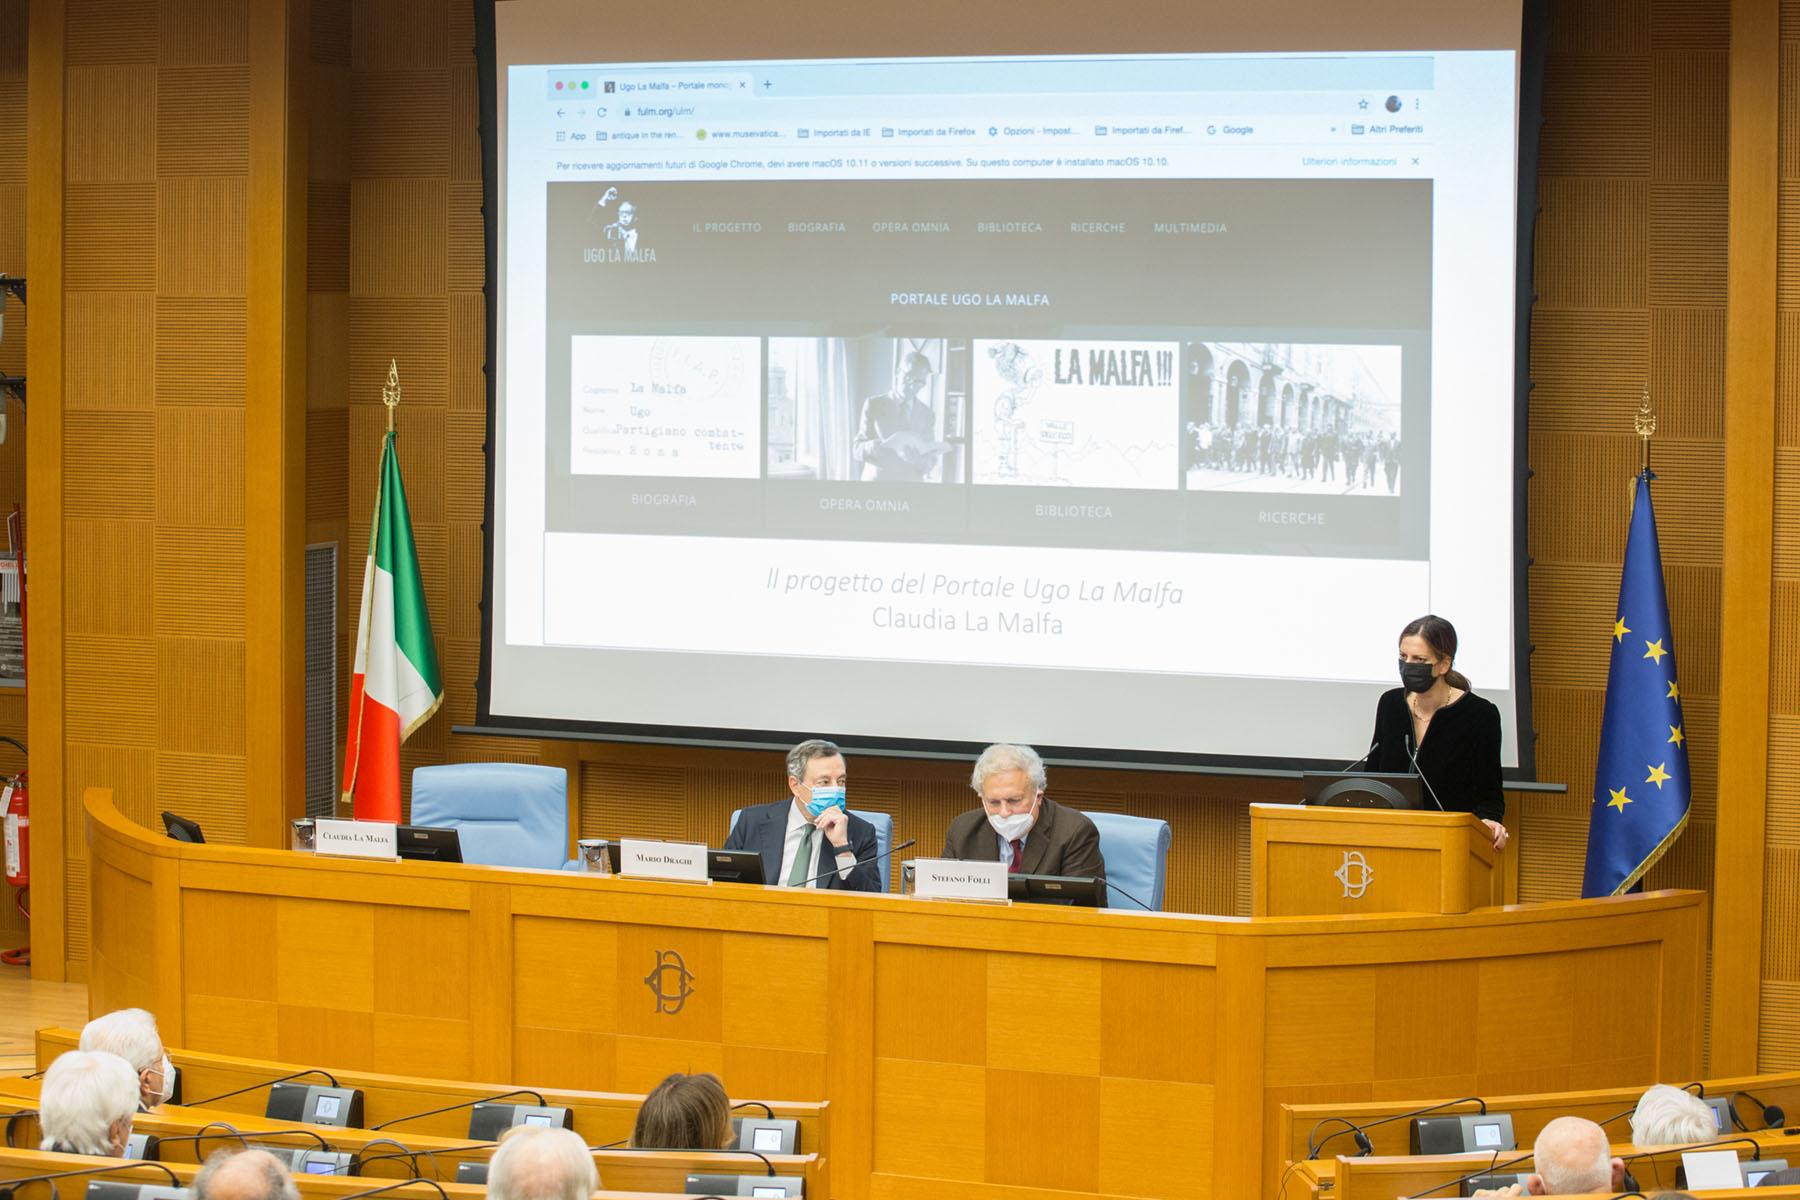 Intervento della curatrice del Portale, Claudia La Malfa, nella foto anche il Presidente del Consiglio, Mario Draghi